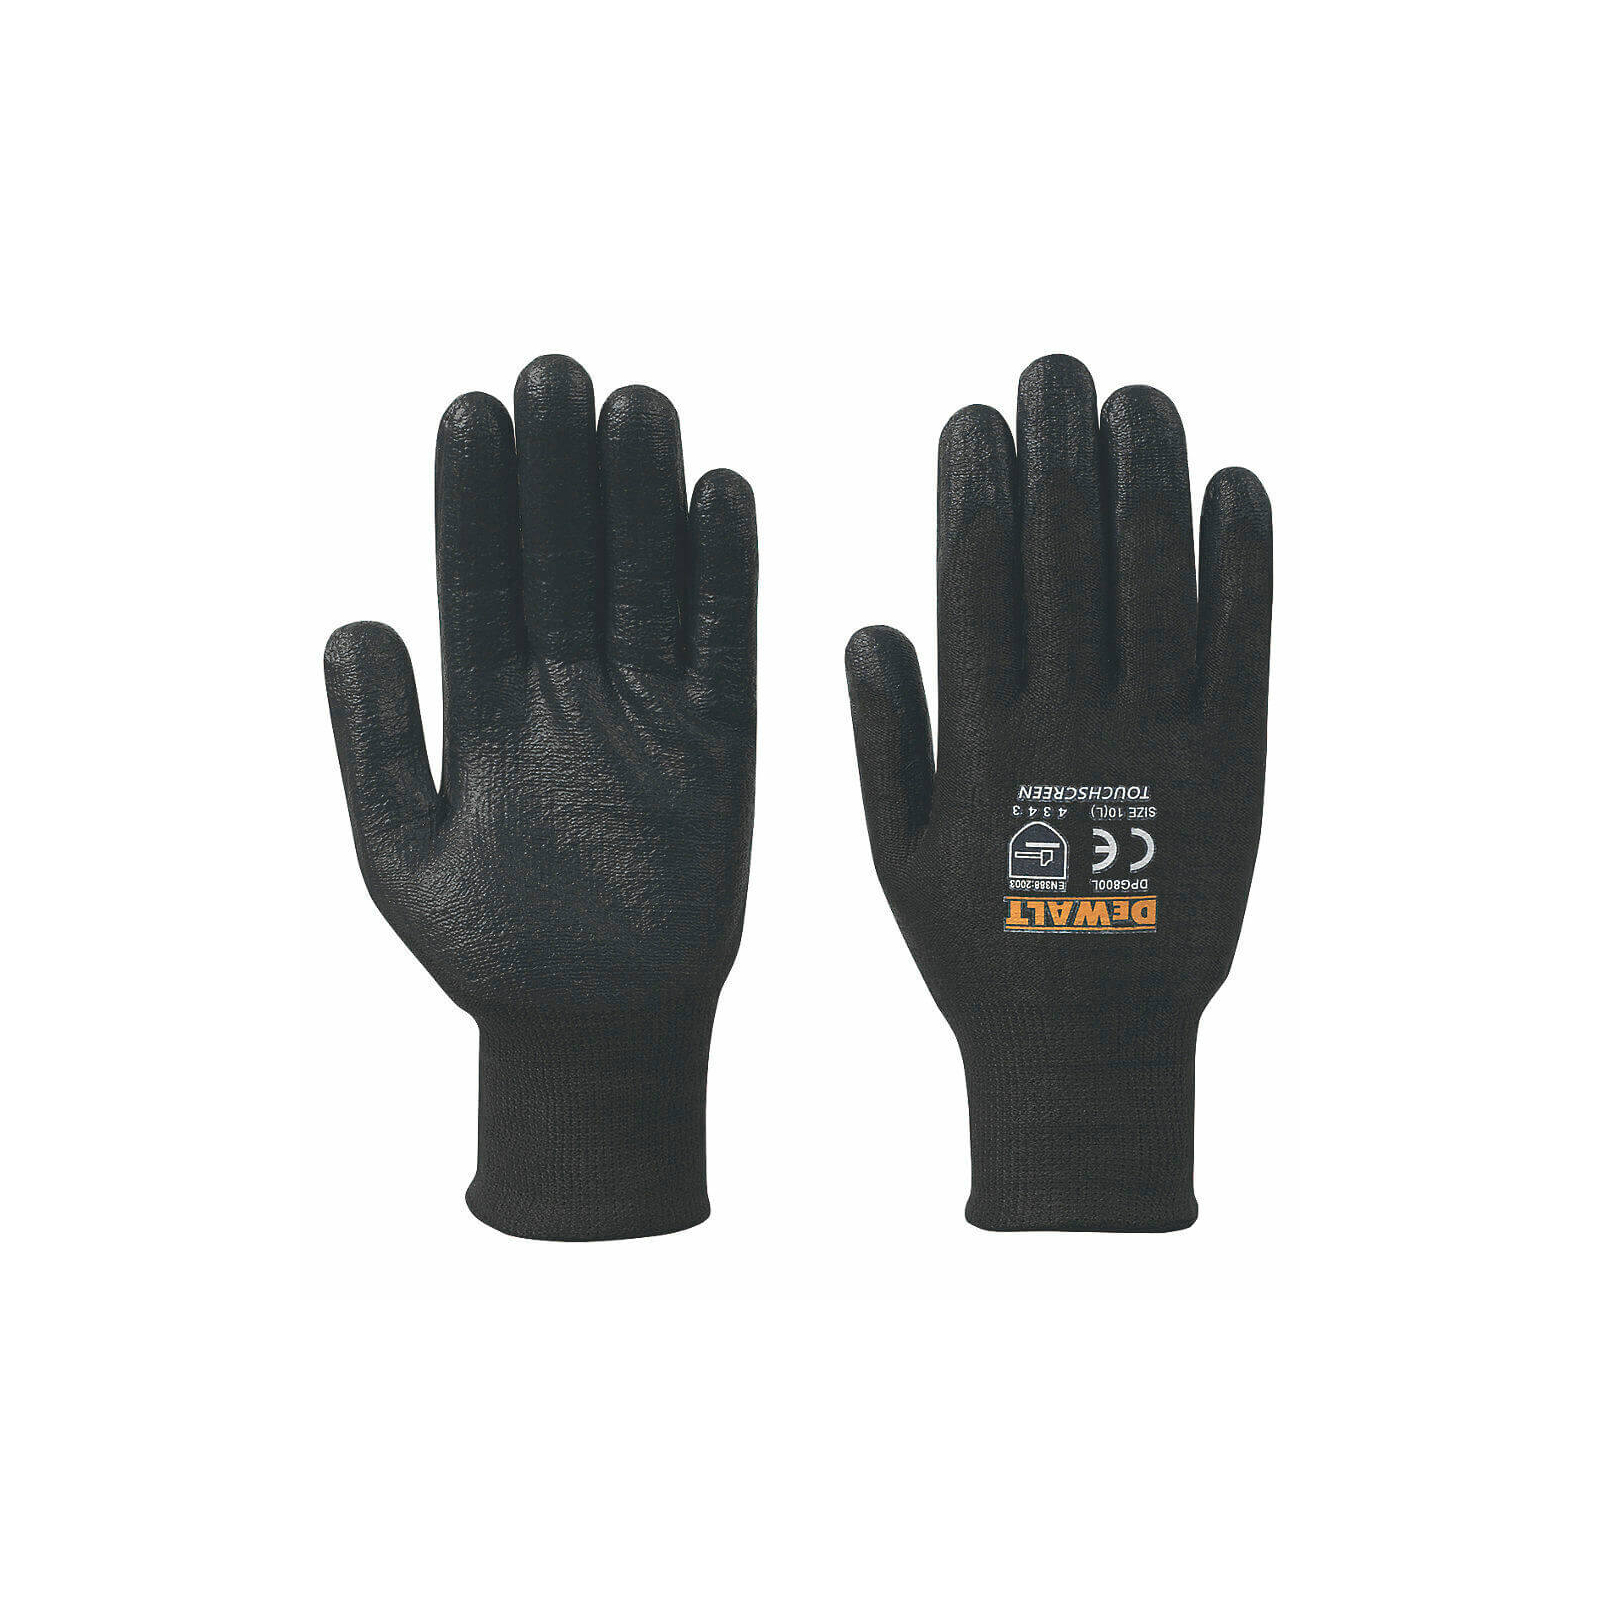 Защитные перчатки DeWALT разм. L/9, с высокой стойкостью к порезам (DPG800L) изображение 2